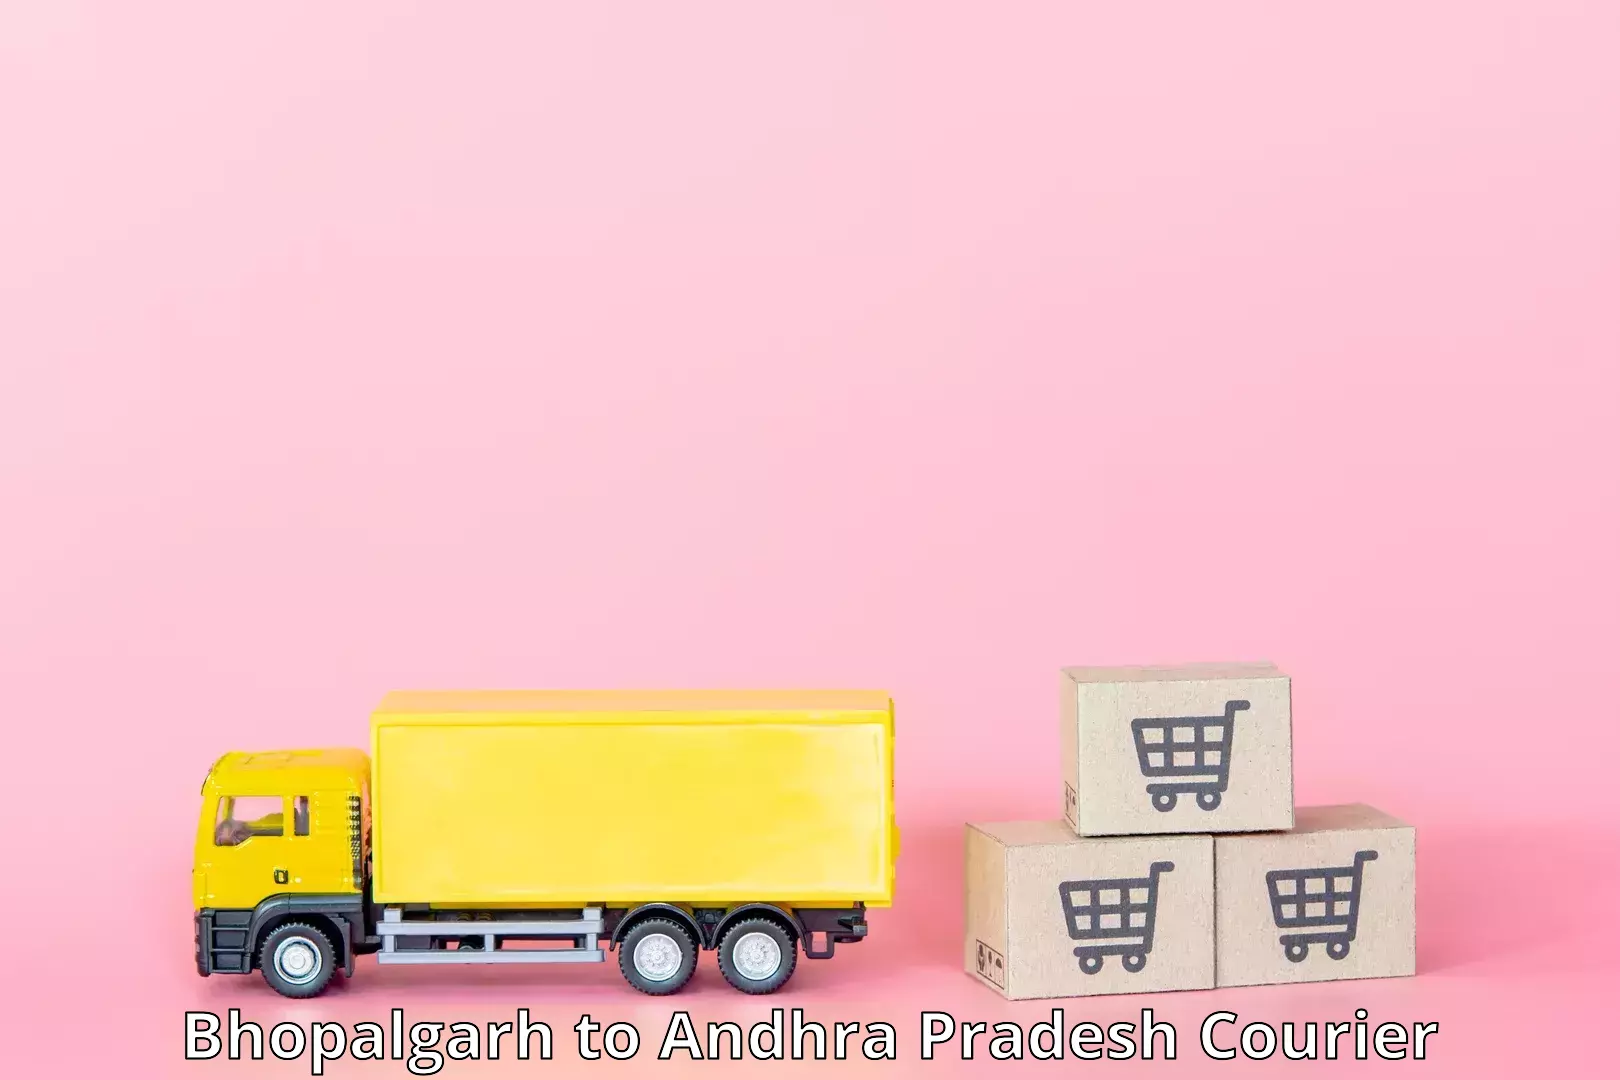 Premium courier solutions Bhopalgarh to Macherla